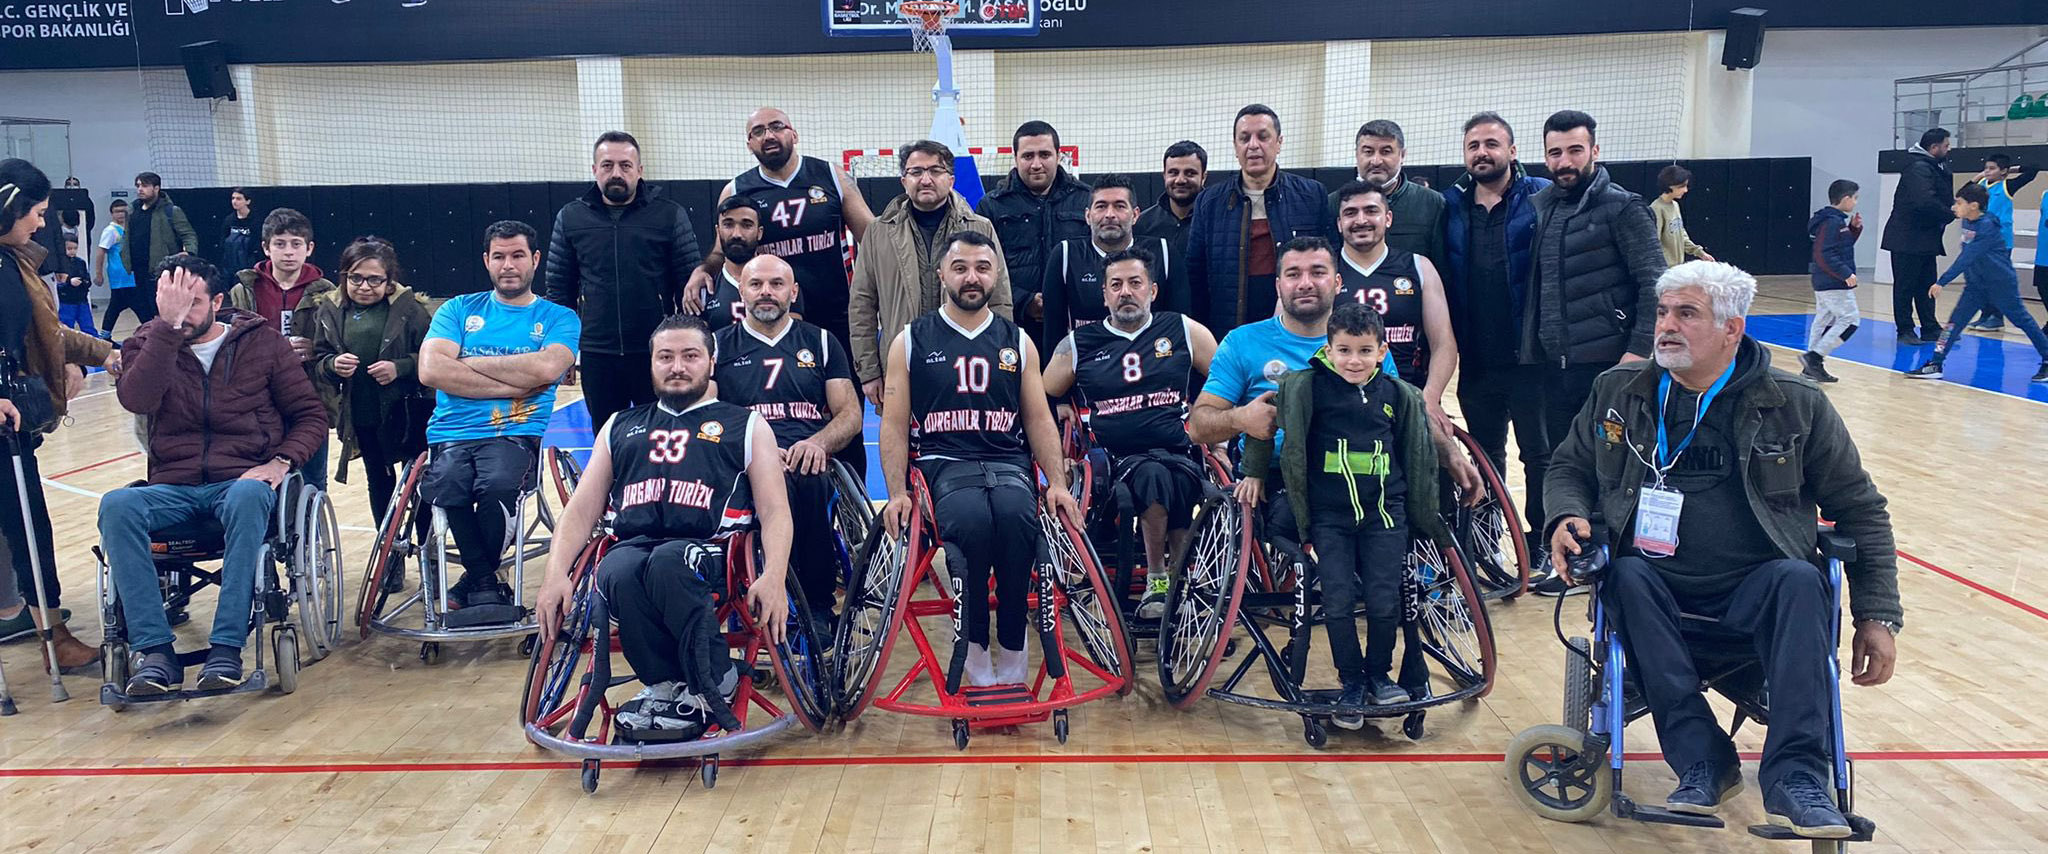 Kızıltepe Engelliler Birliği Spor, Zile Engelliler Gençlik Kulübü’nü 64-59 yendi